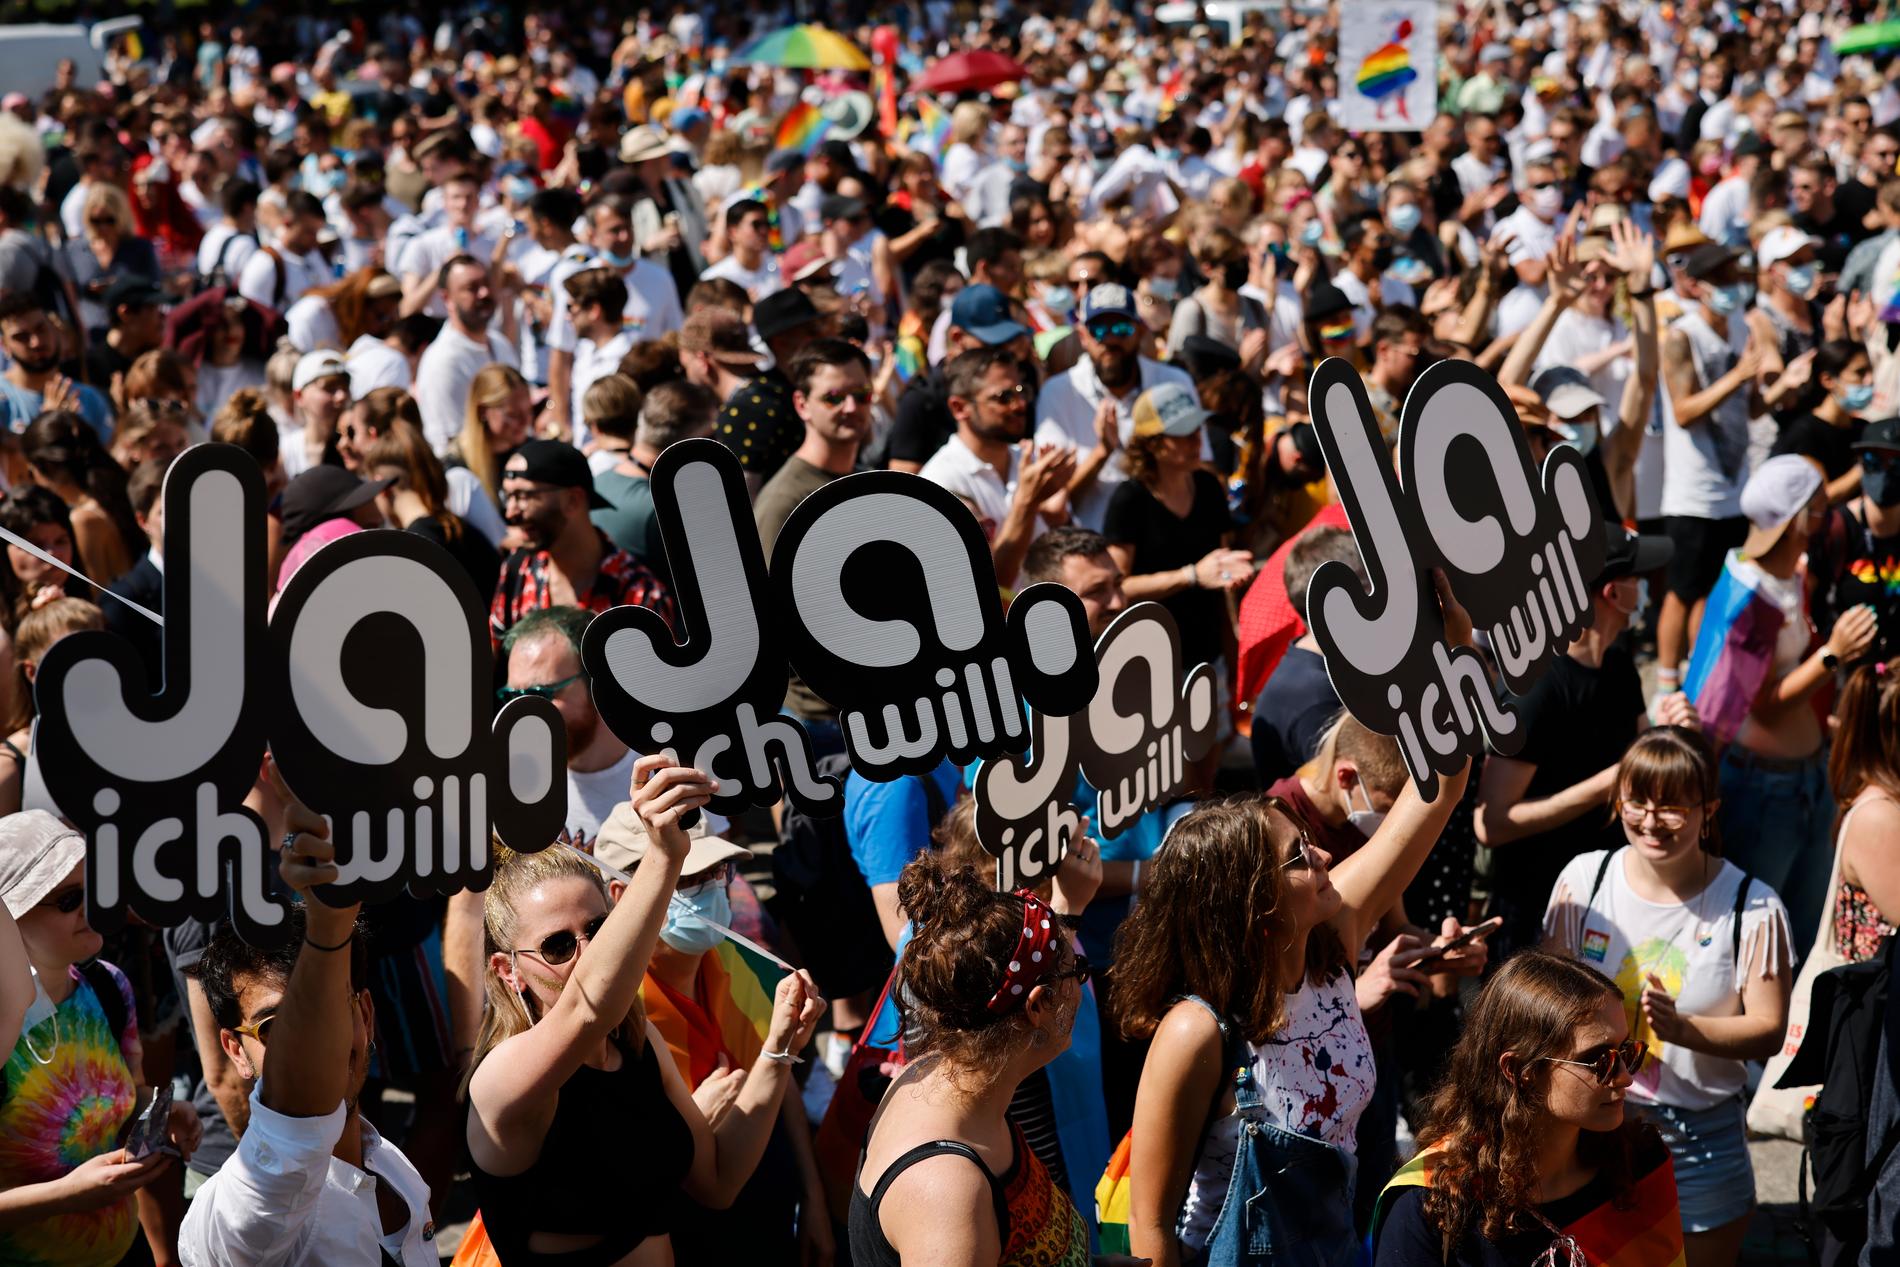 Vid prideparaden i Zürich för ett par veckor kampanjade ja-sidan inför dagens folkomröstning om samkönade äktenskap i Schweiz.